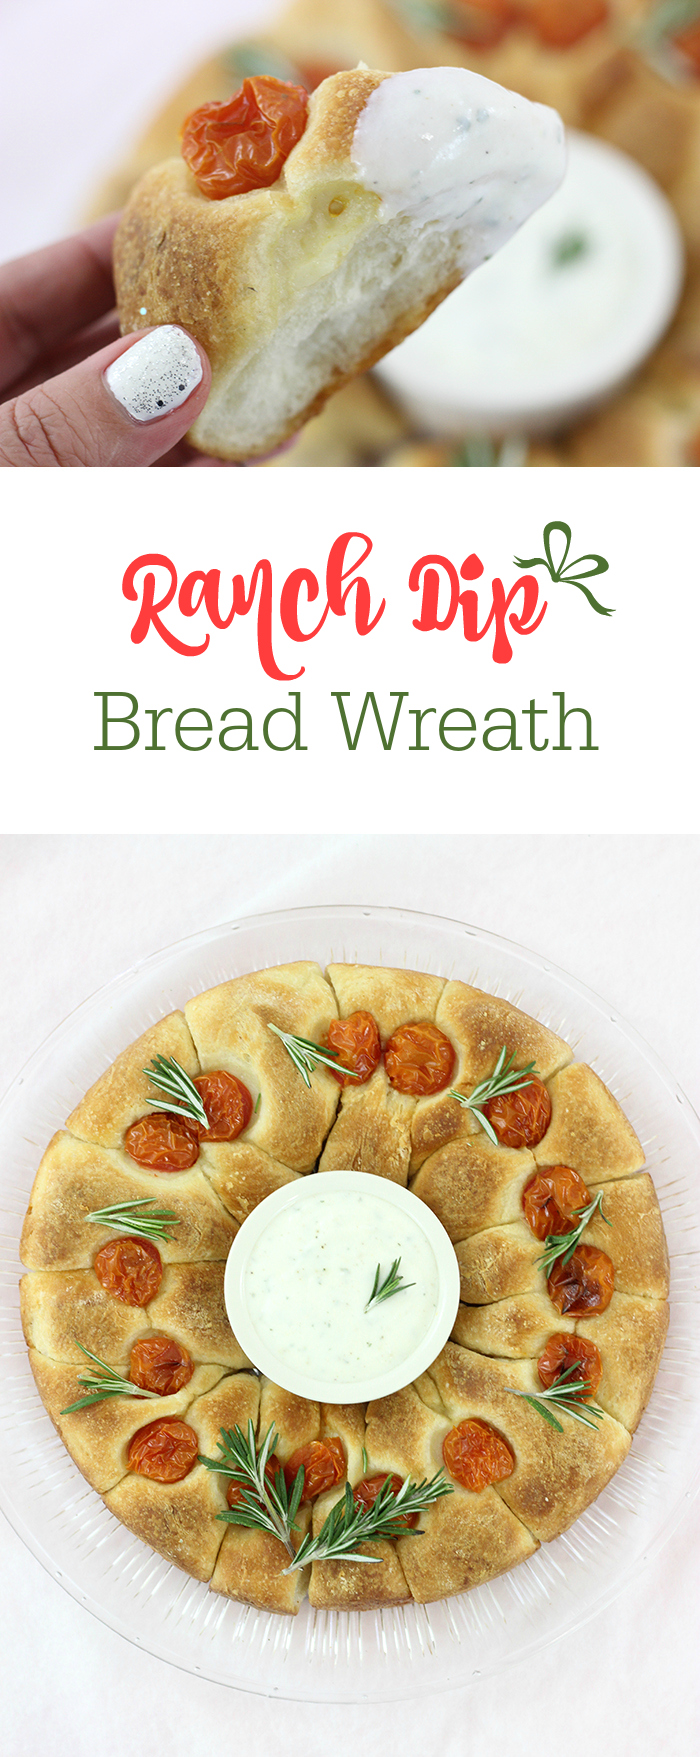 ranch dip bread wreath